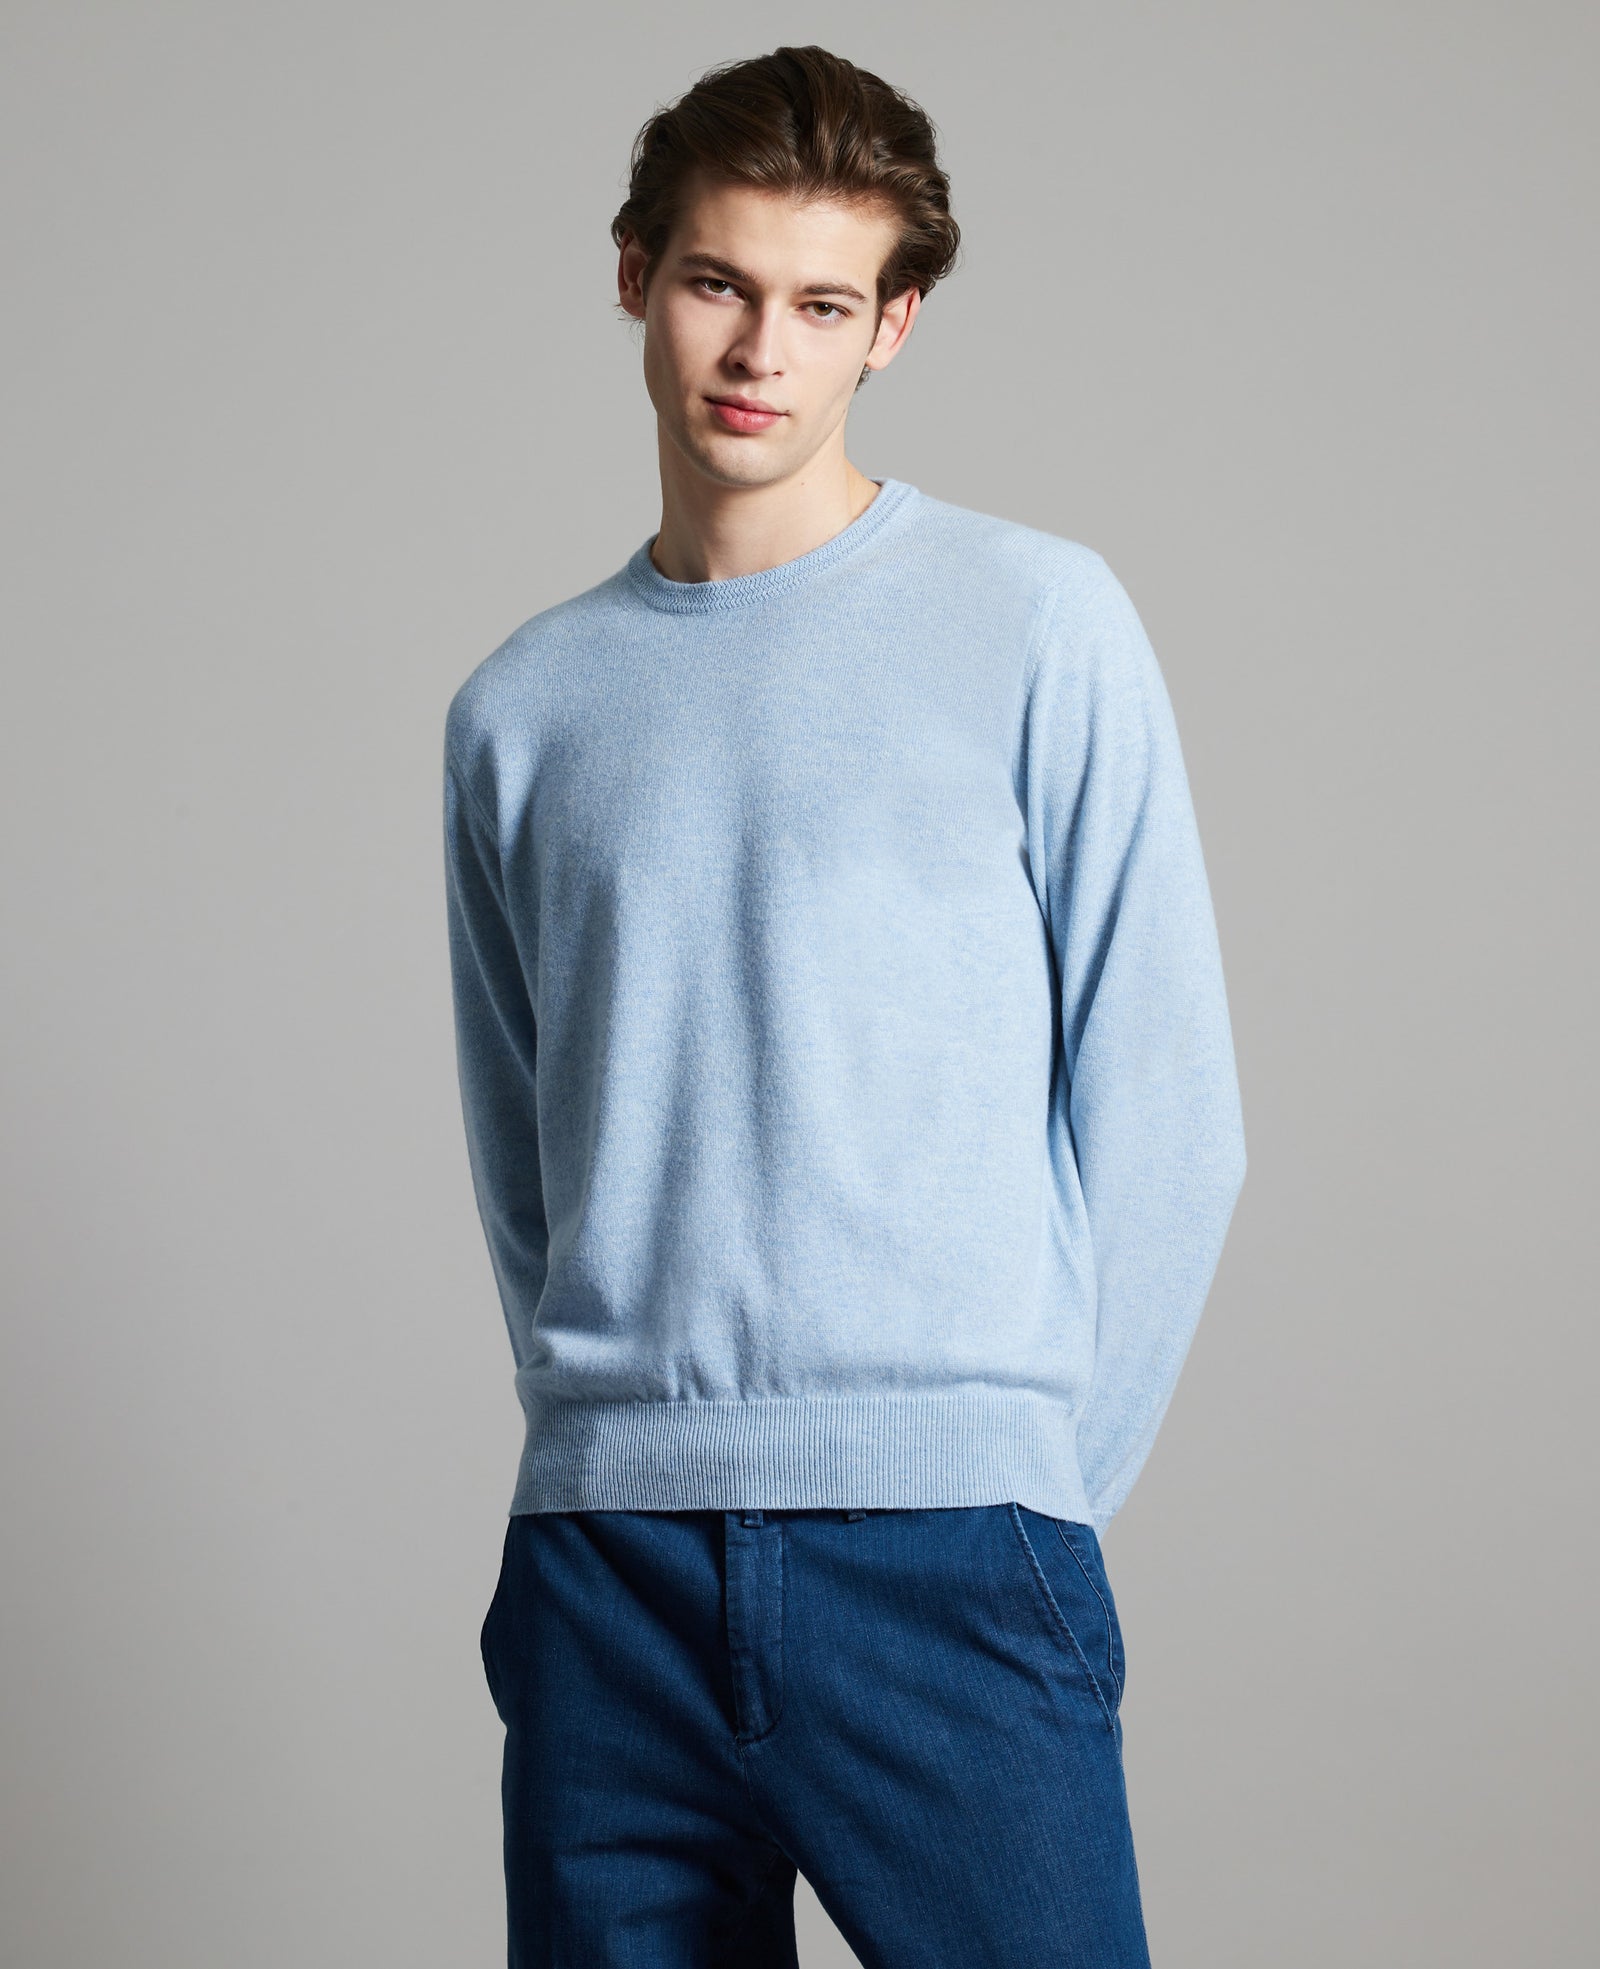 Azure mélange kid cashmere round-neck sweater